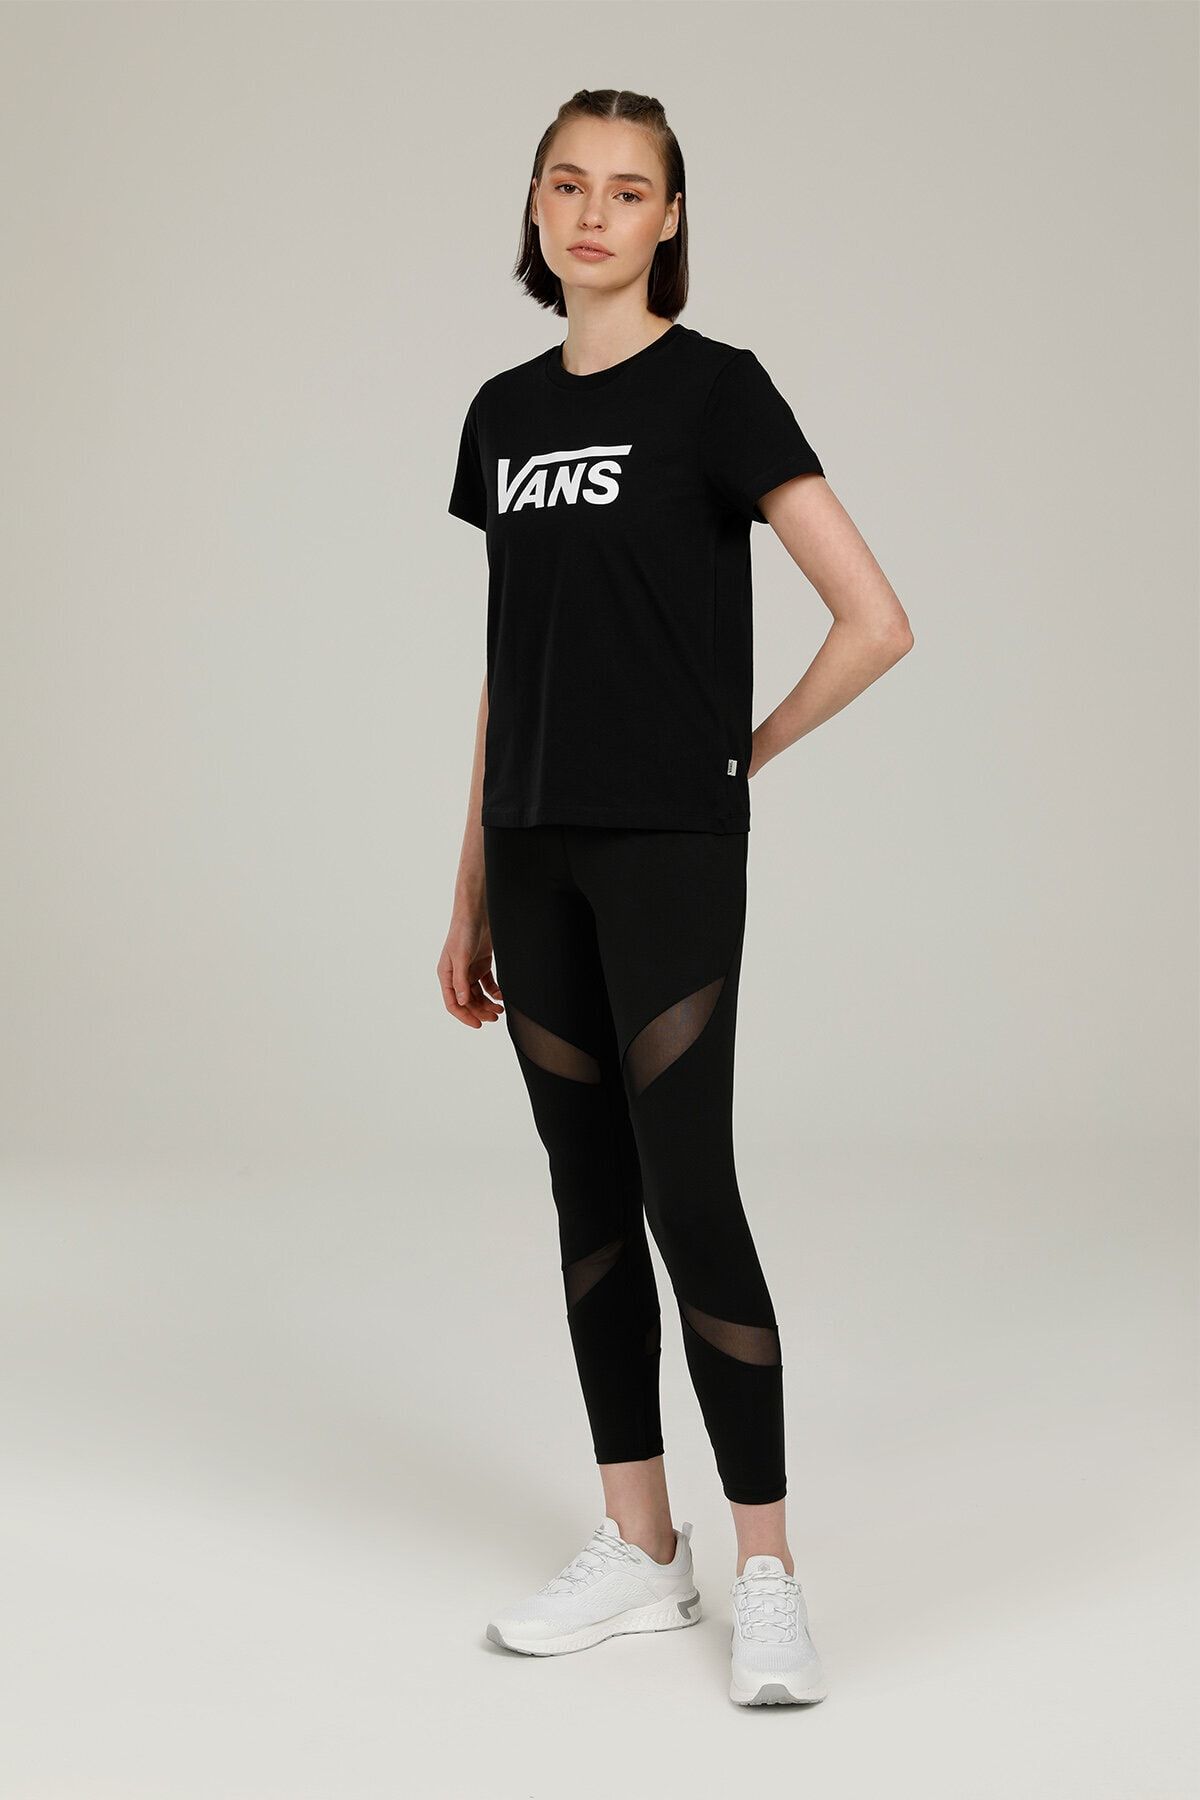 تی شرت یقه خدمه طرح چاپی مدل ساده آستین کوتاه زنانه ونس Vans (برند آمریکا)